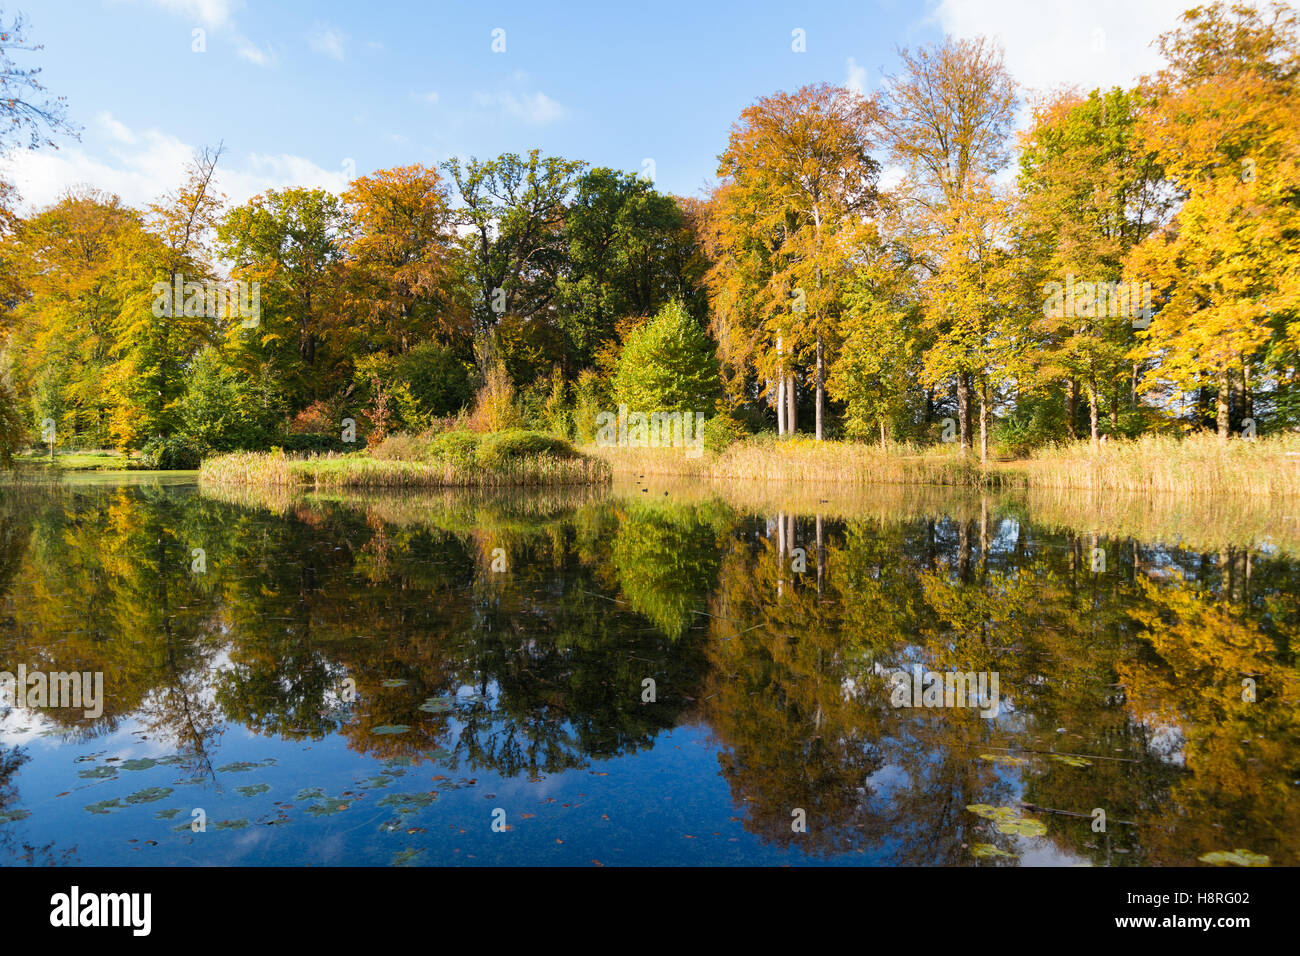 Reflet des arbres aux couleurs automnales en étang de country estate Boekesteyn, 's Graveland, Pays-Bas Banque D'Images